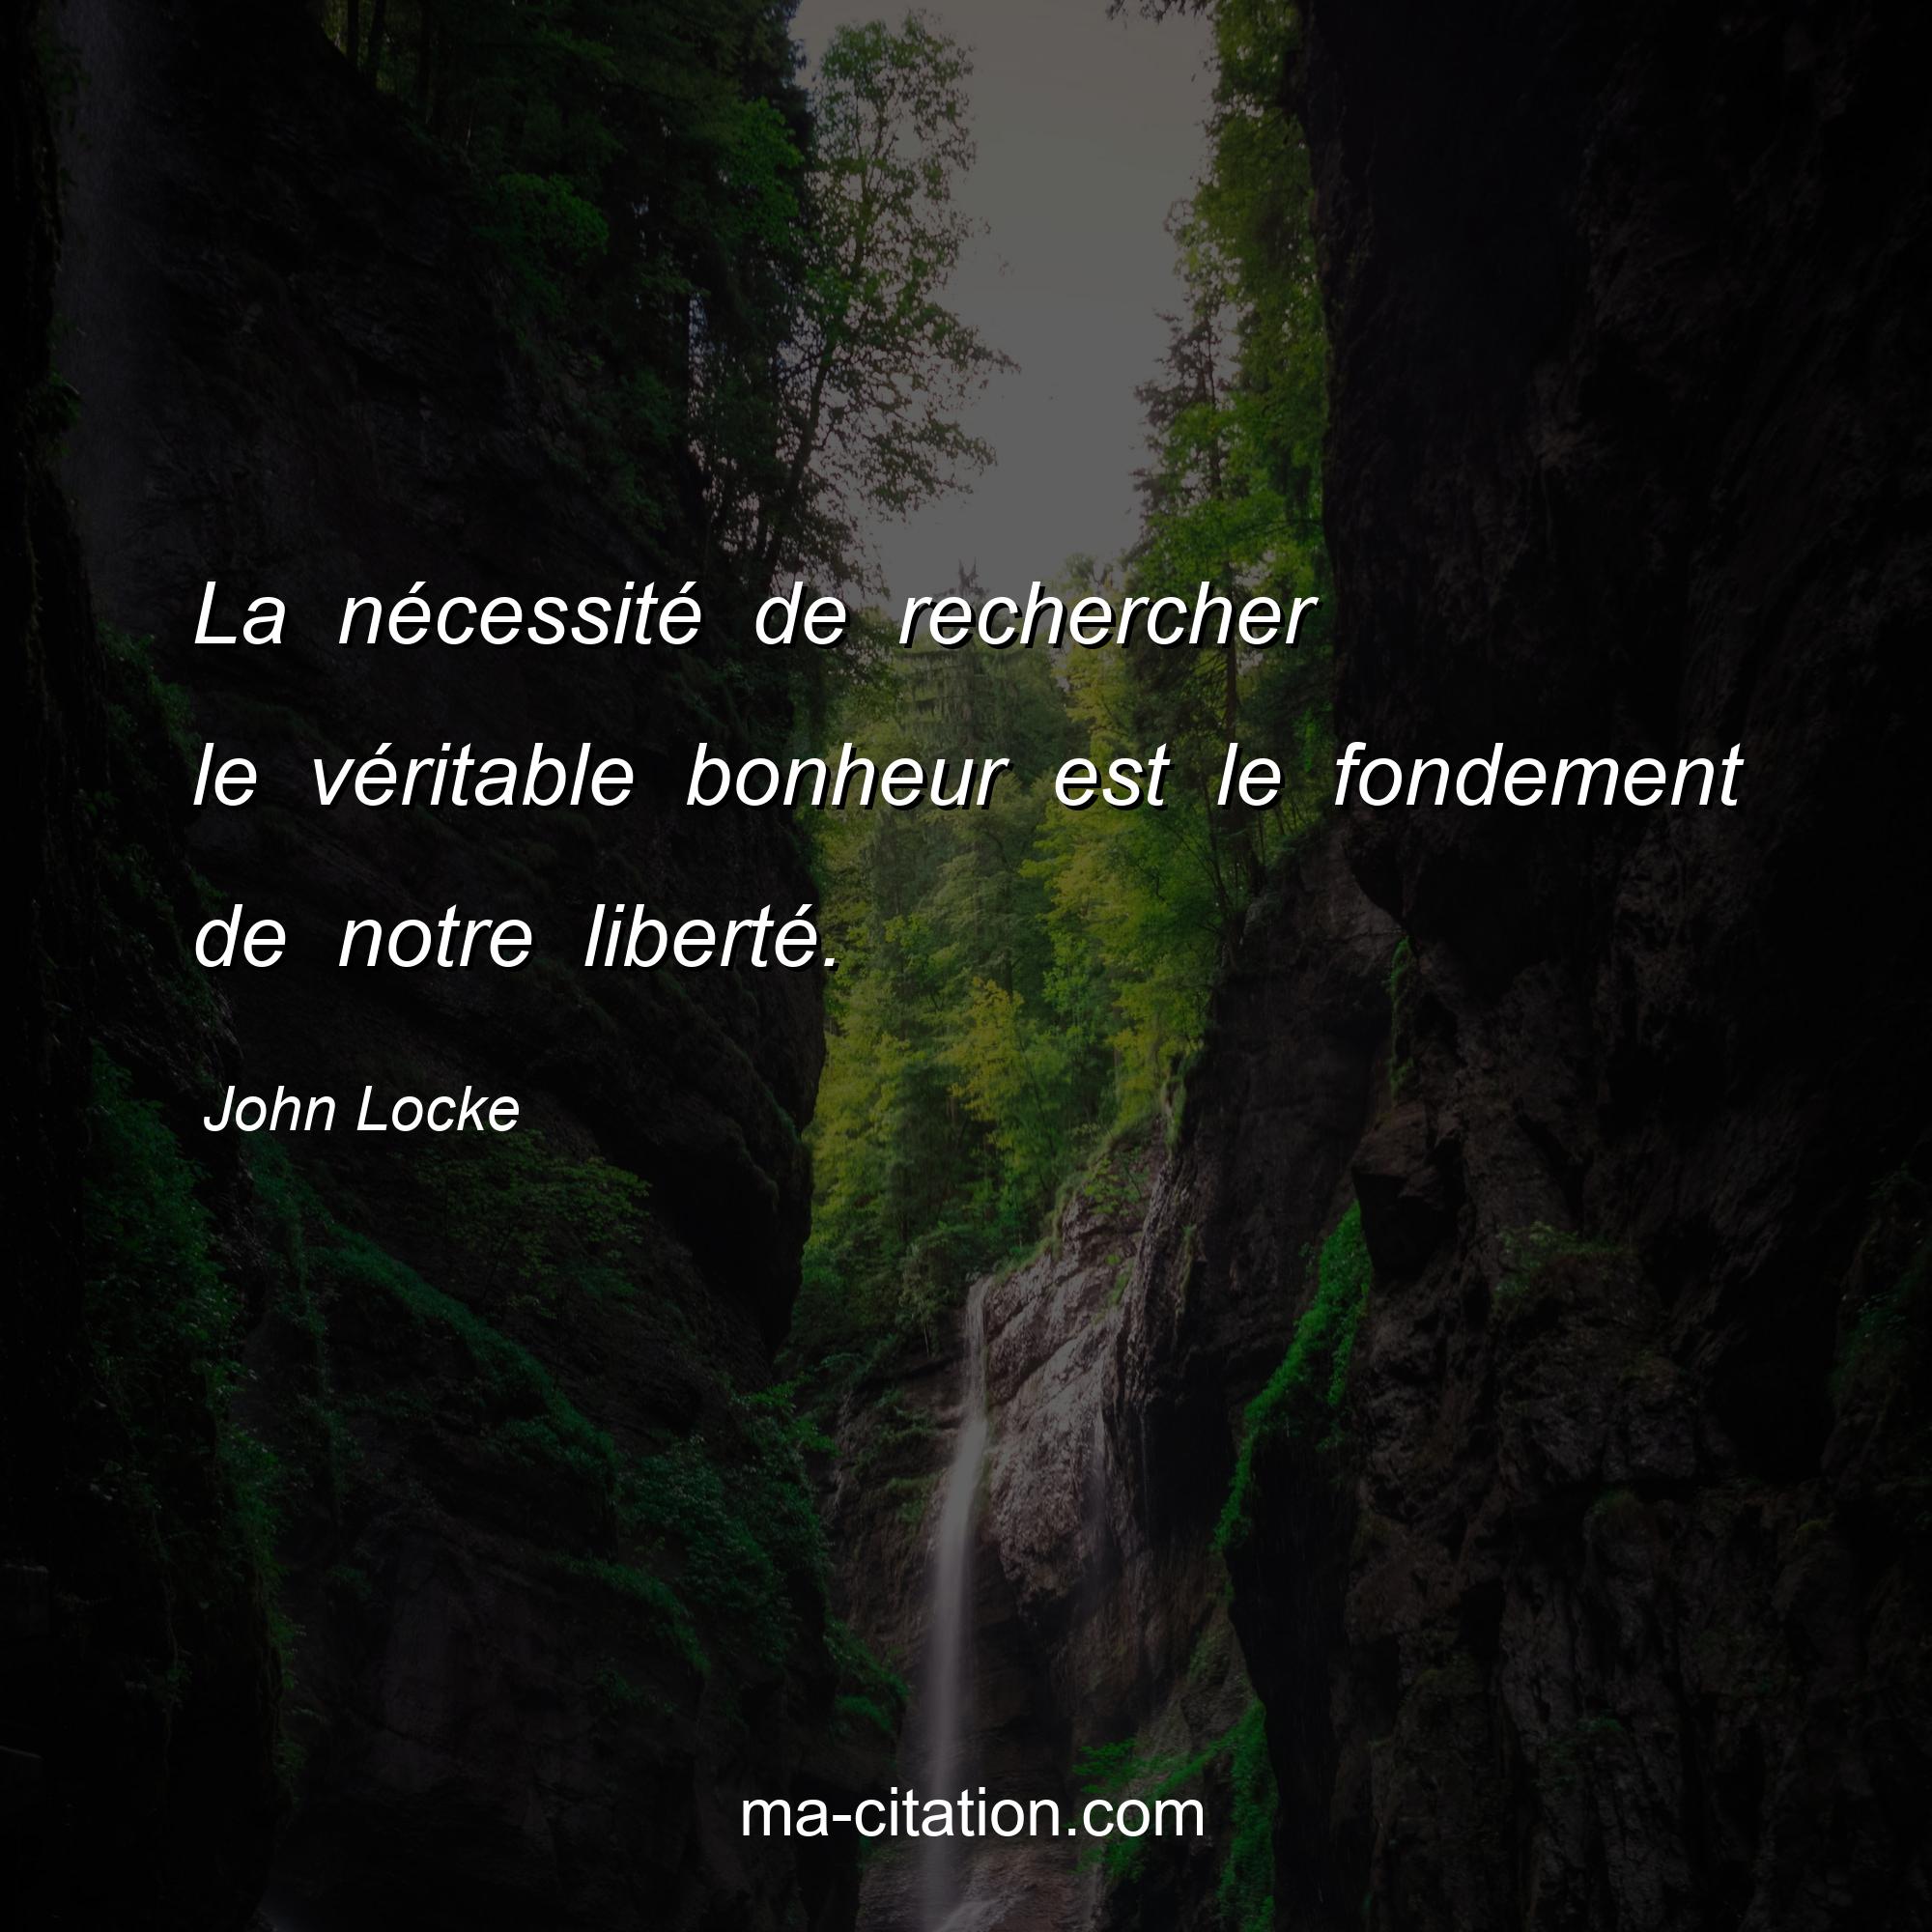 John Locke : La nécessité de rechercher le véritable bonheur est le fondement de notre liberté.